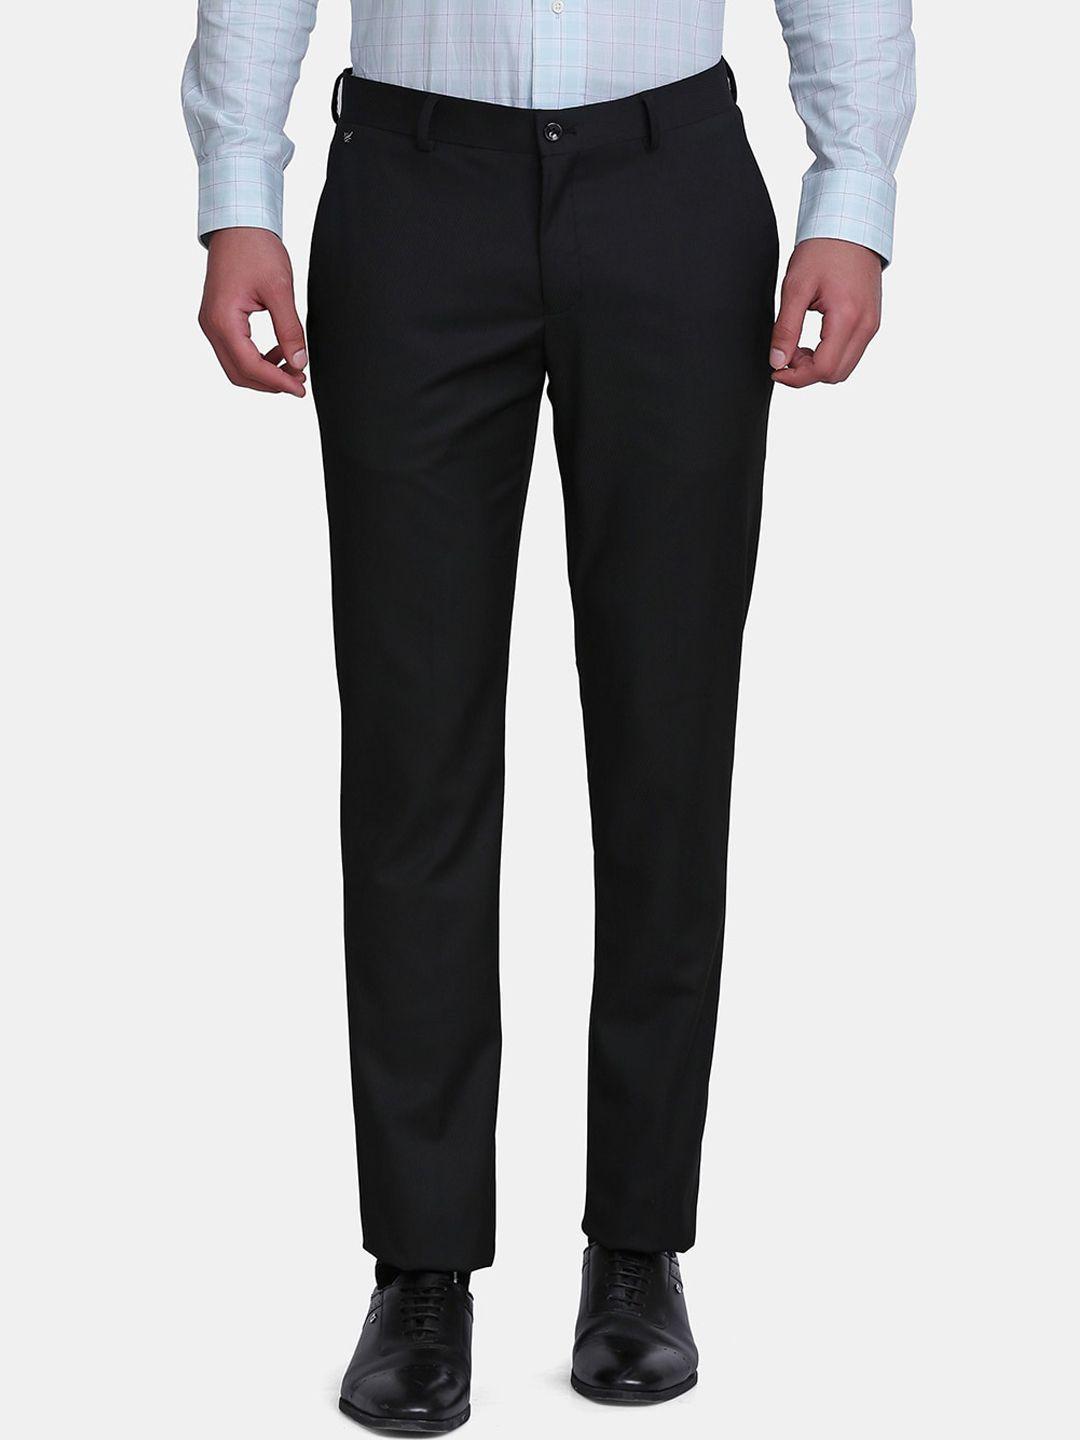 blackberrys-men-black-b-91-skinny-fit-trousers